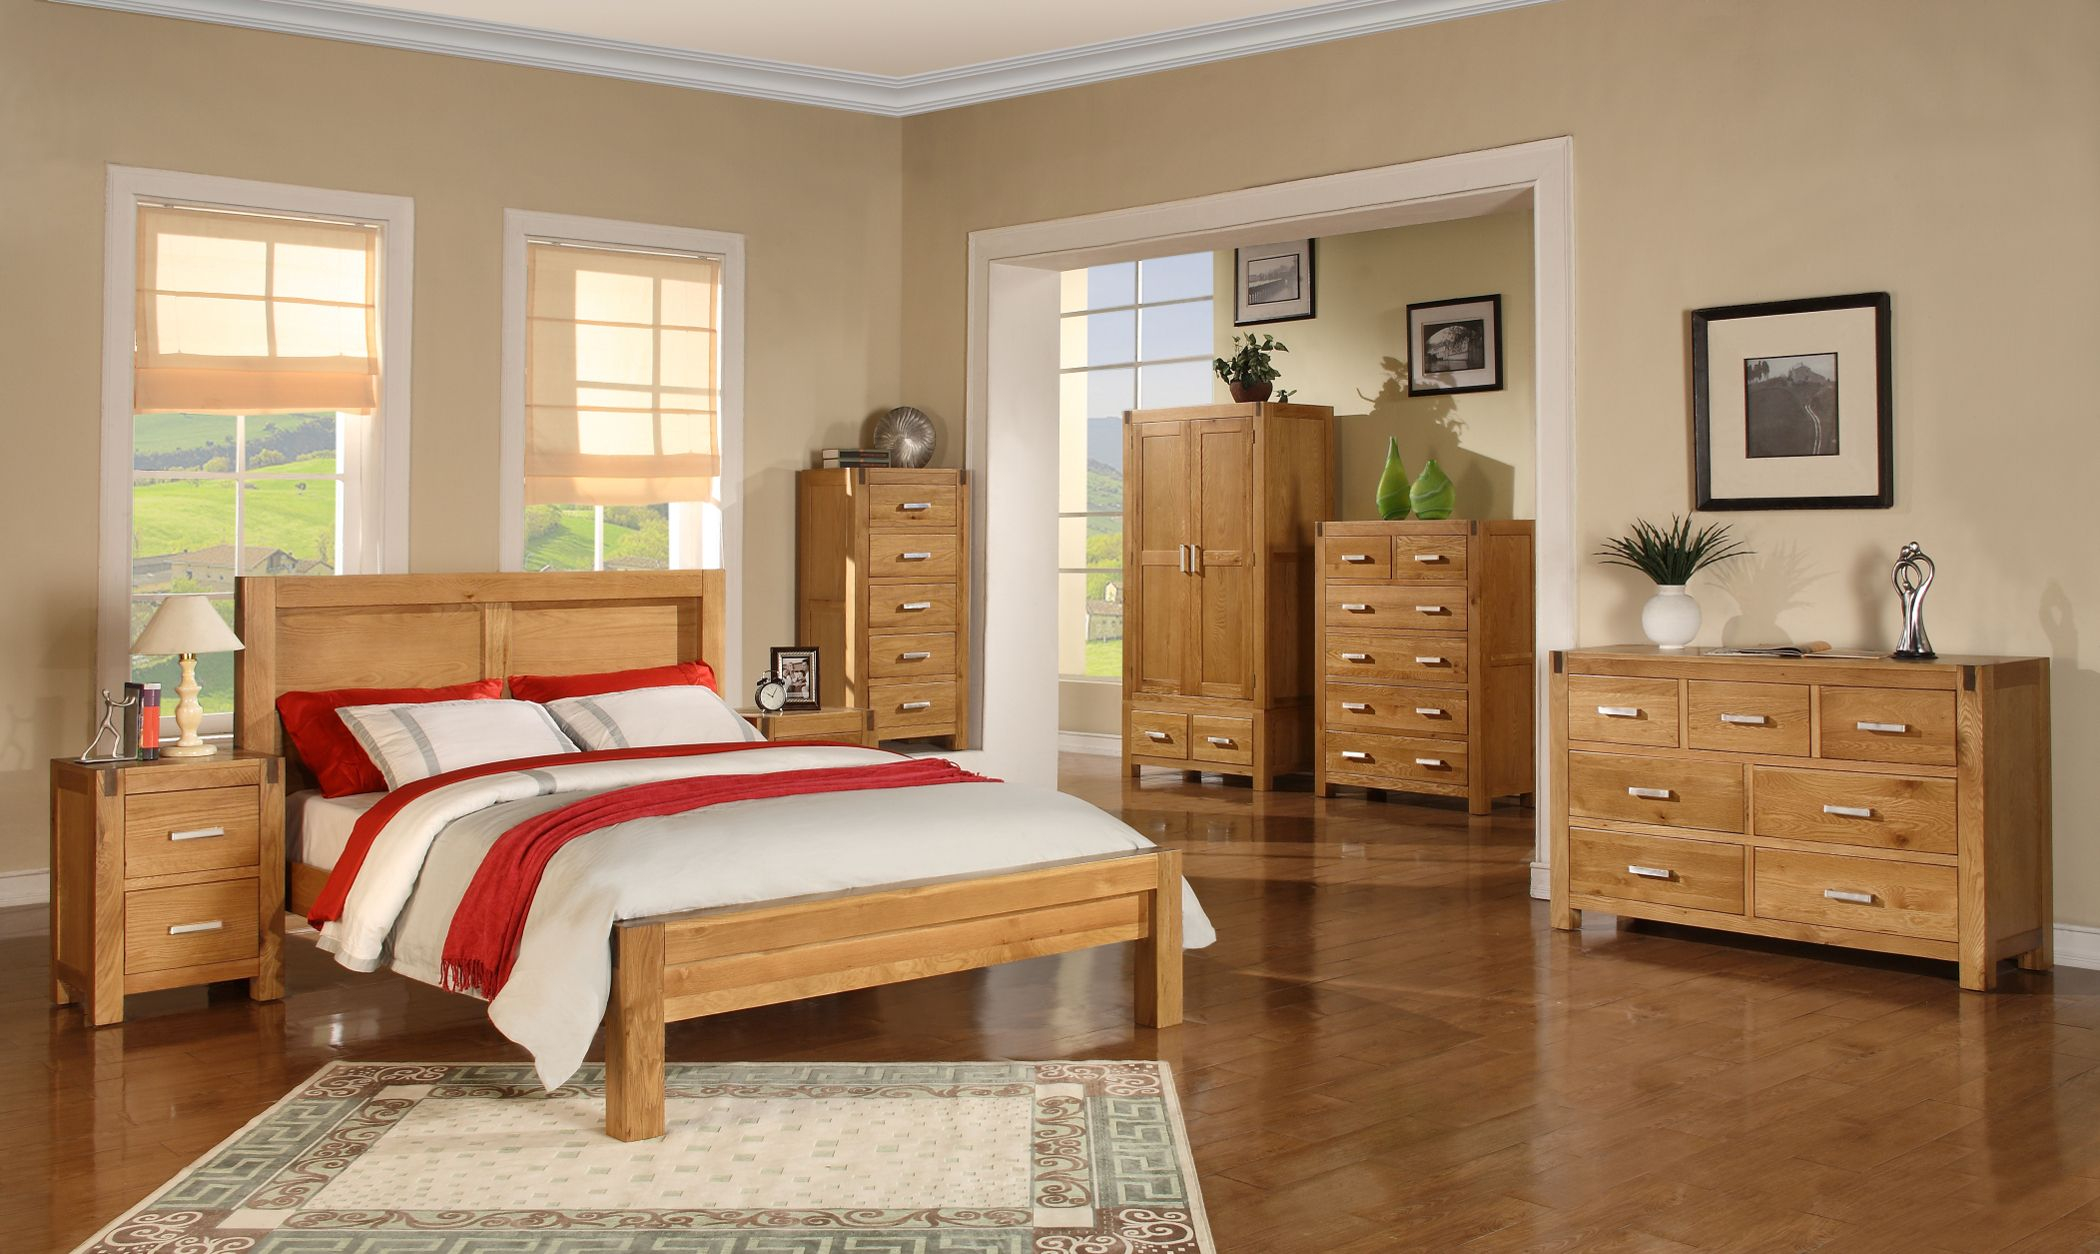 Oak Bedroom Furniture Bedroom Furniture In 2019 Oak Bedroom intended for size 2100 X 1254